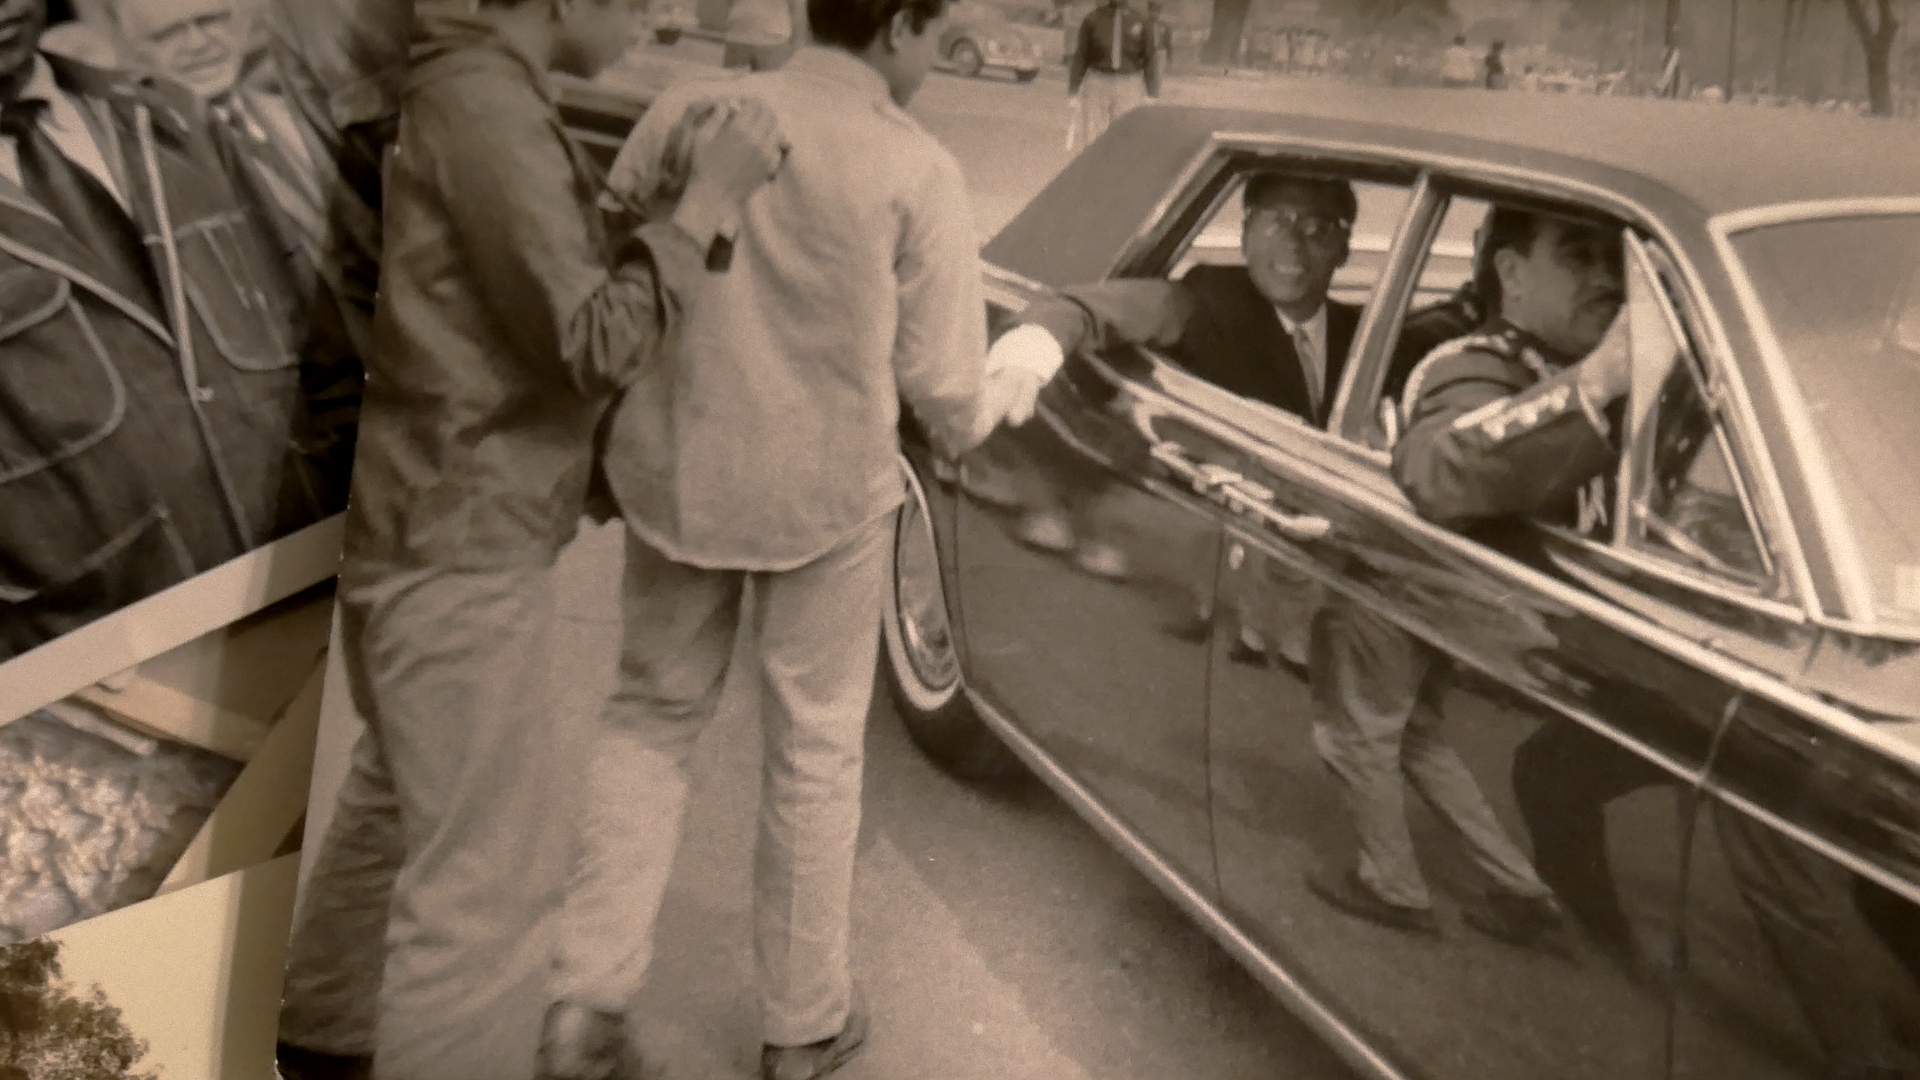 Imágenes como las del presidente Gustavo Díaz Ordaz, responsable de la masacre de estudiantes en 1968, se reviven no solo en televisión sino en redes sociales. Foto: Arturo Díaz